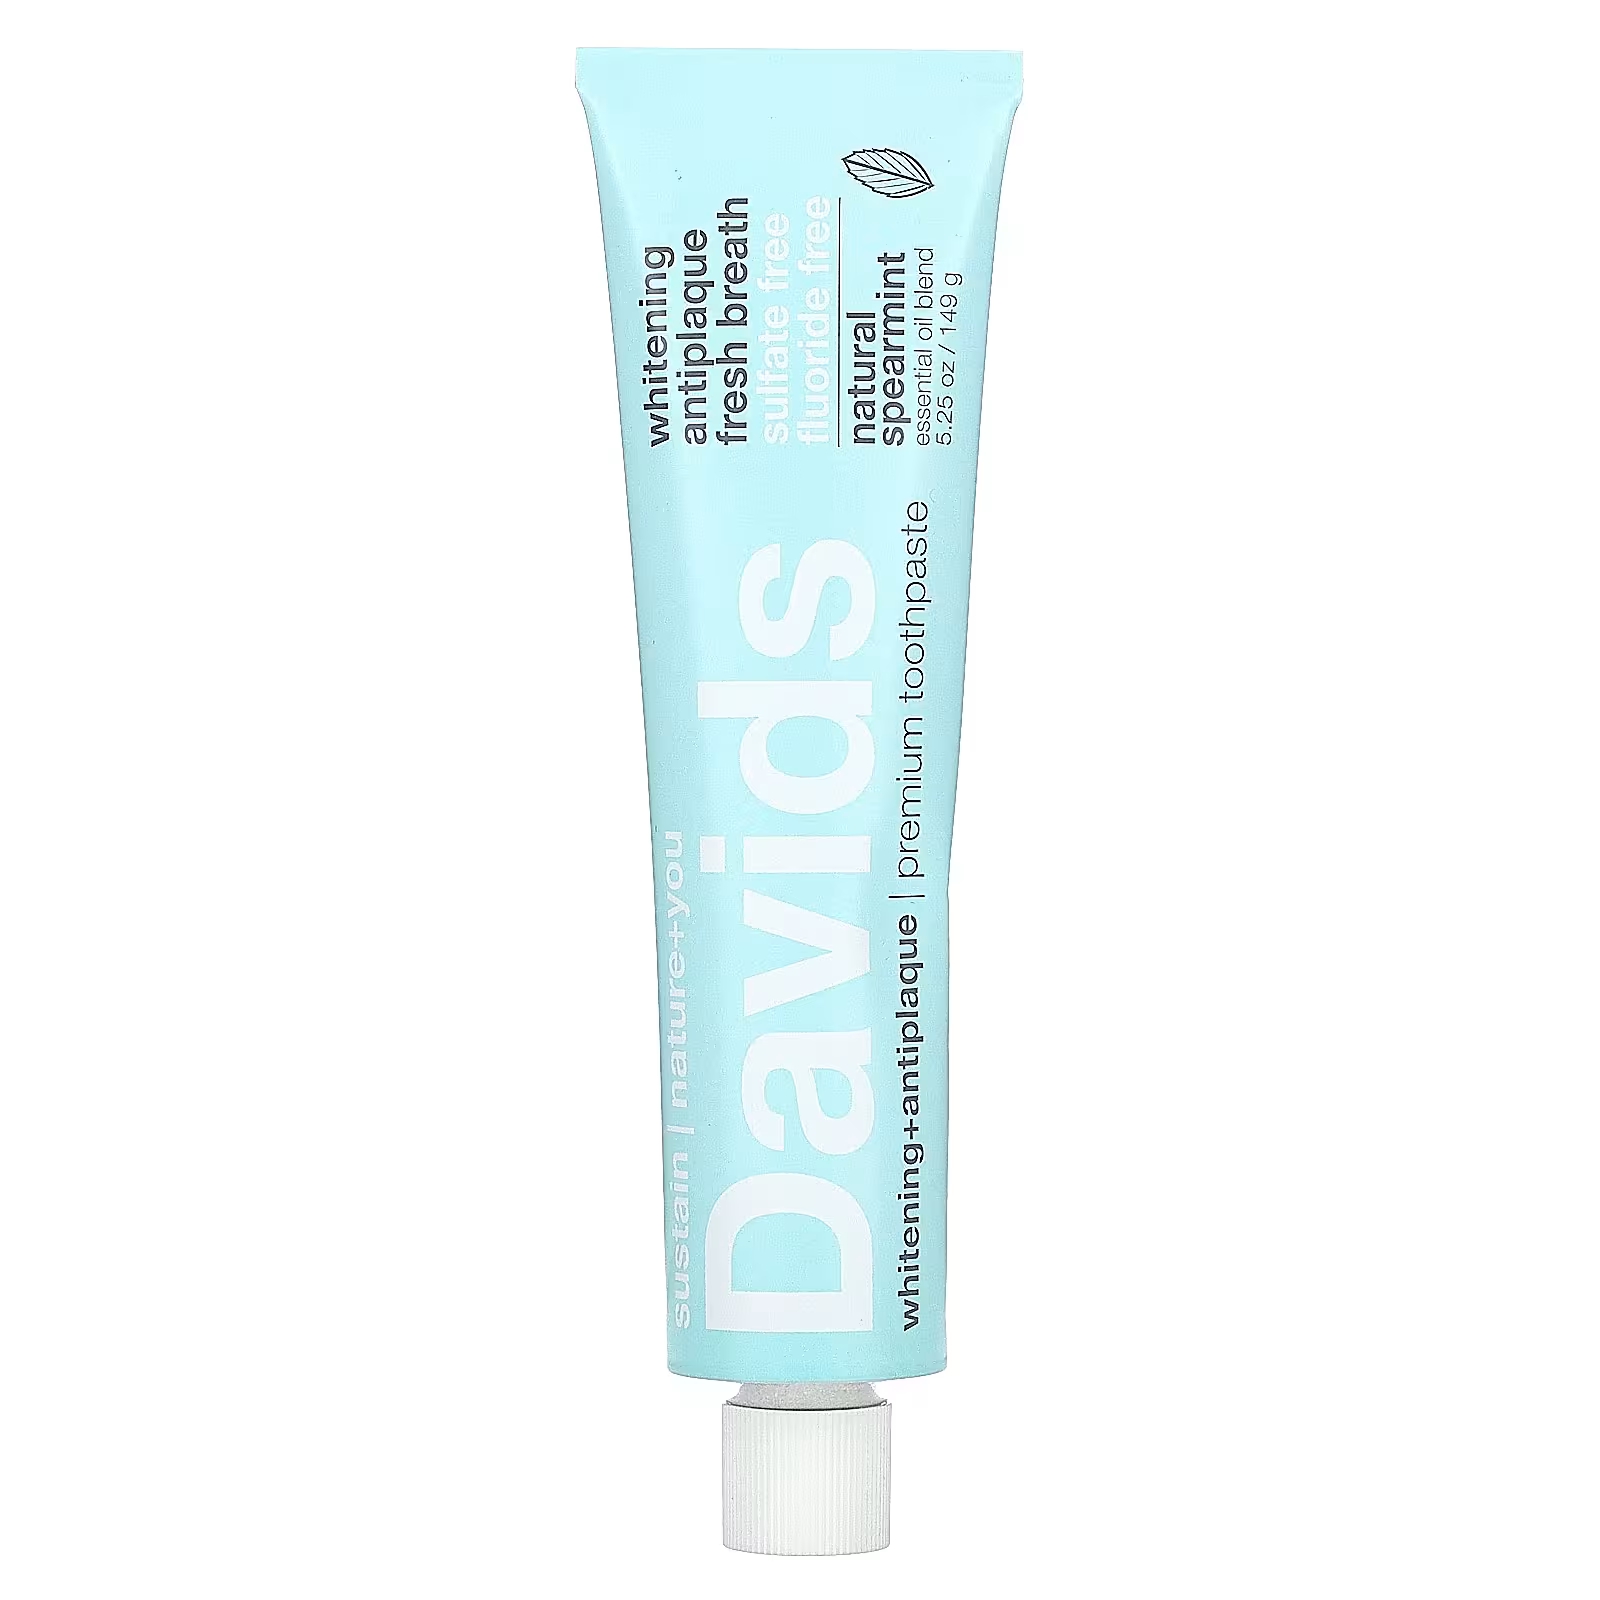 Зубная паста премиум-класса Davids Natural Toothpaste натуральная мята, 149 г торт медовик без консервантов и искусственных красителей 450г